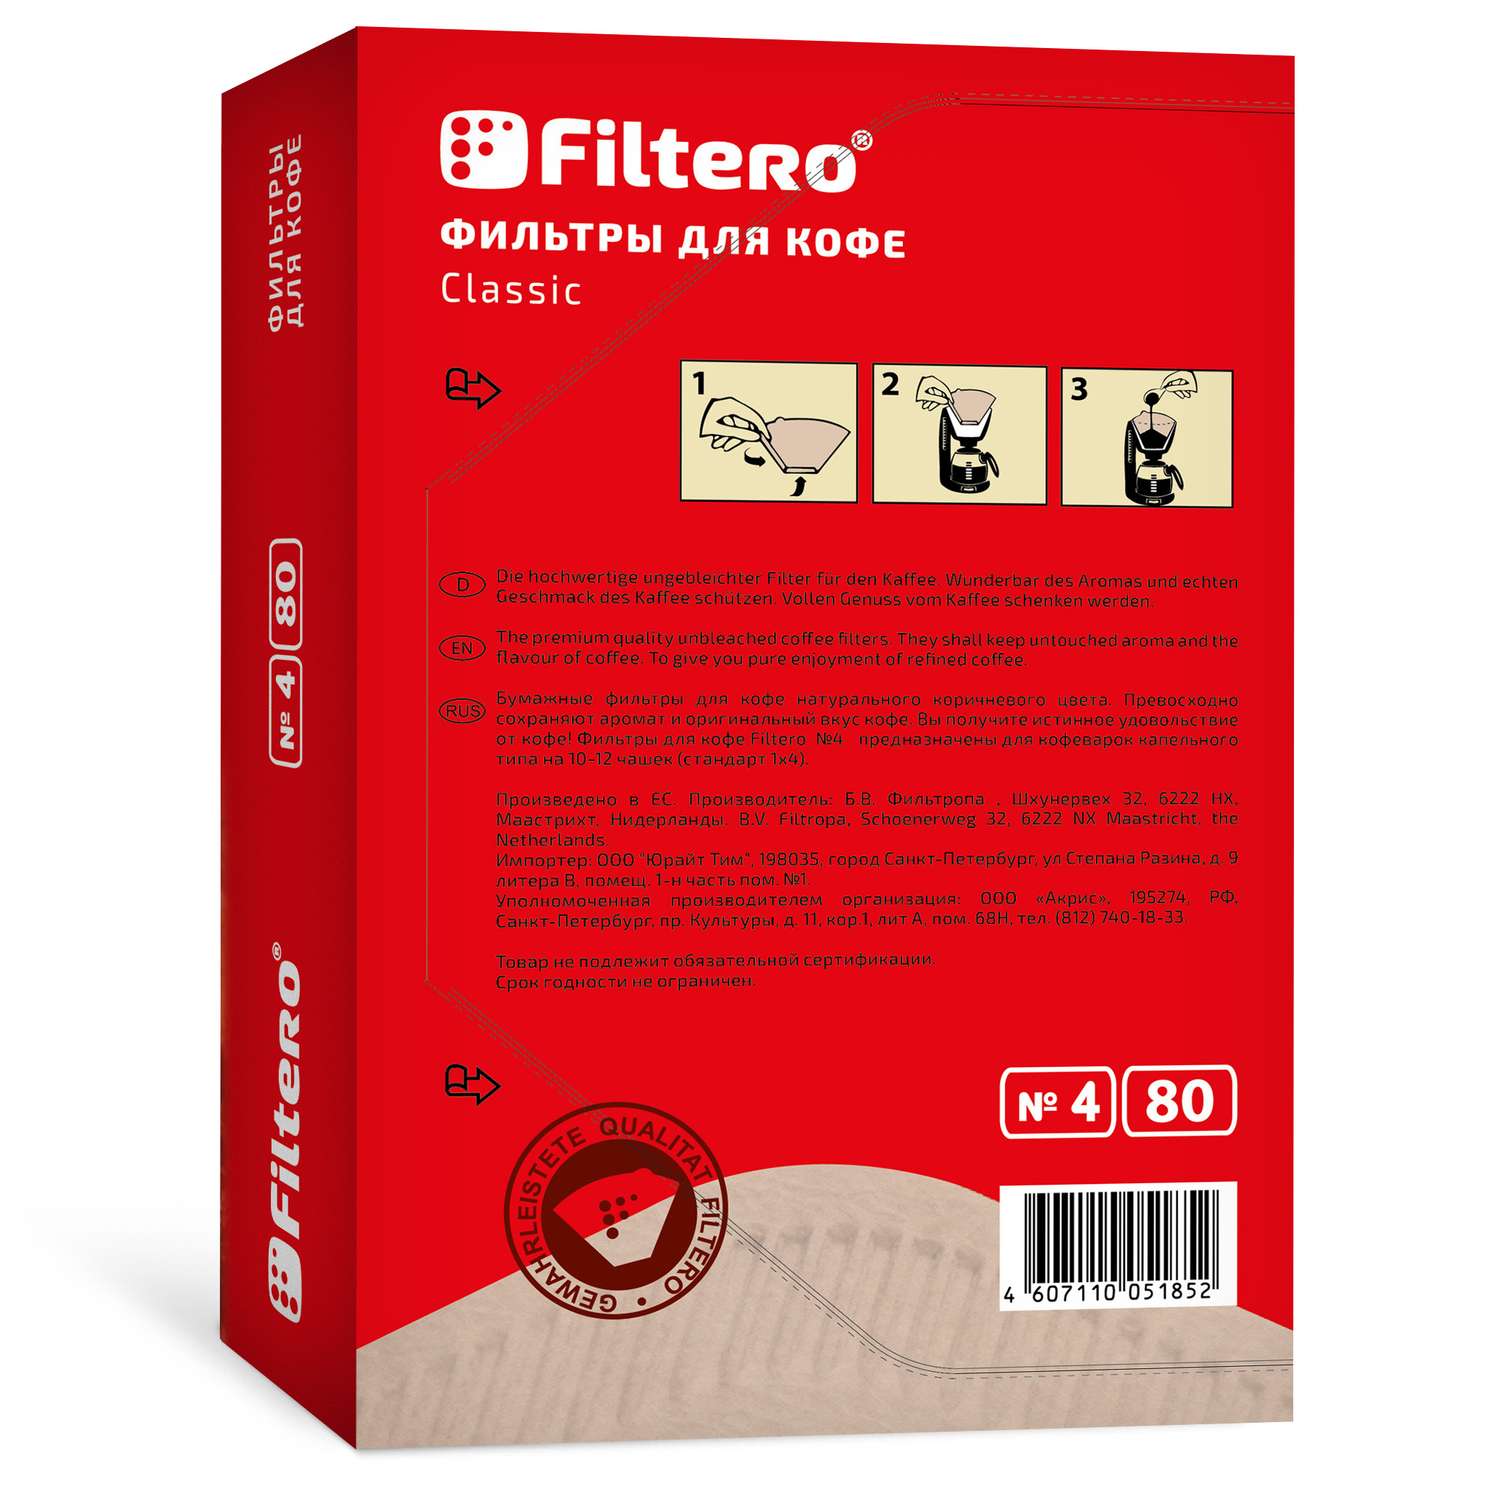 Комплект фильтров Filtero для кофеварки №4/160 коричневые Classic - фото 2